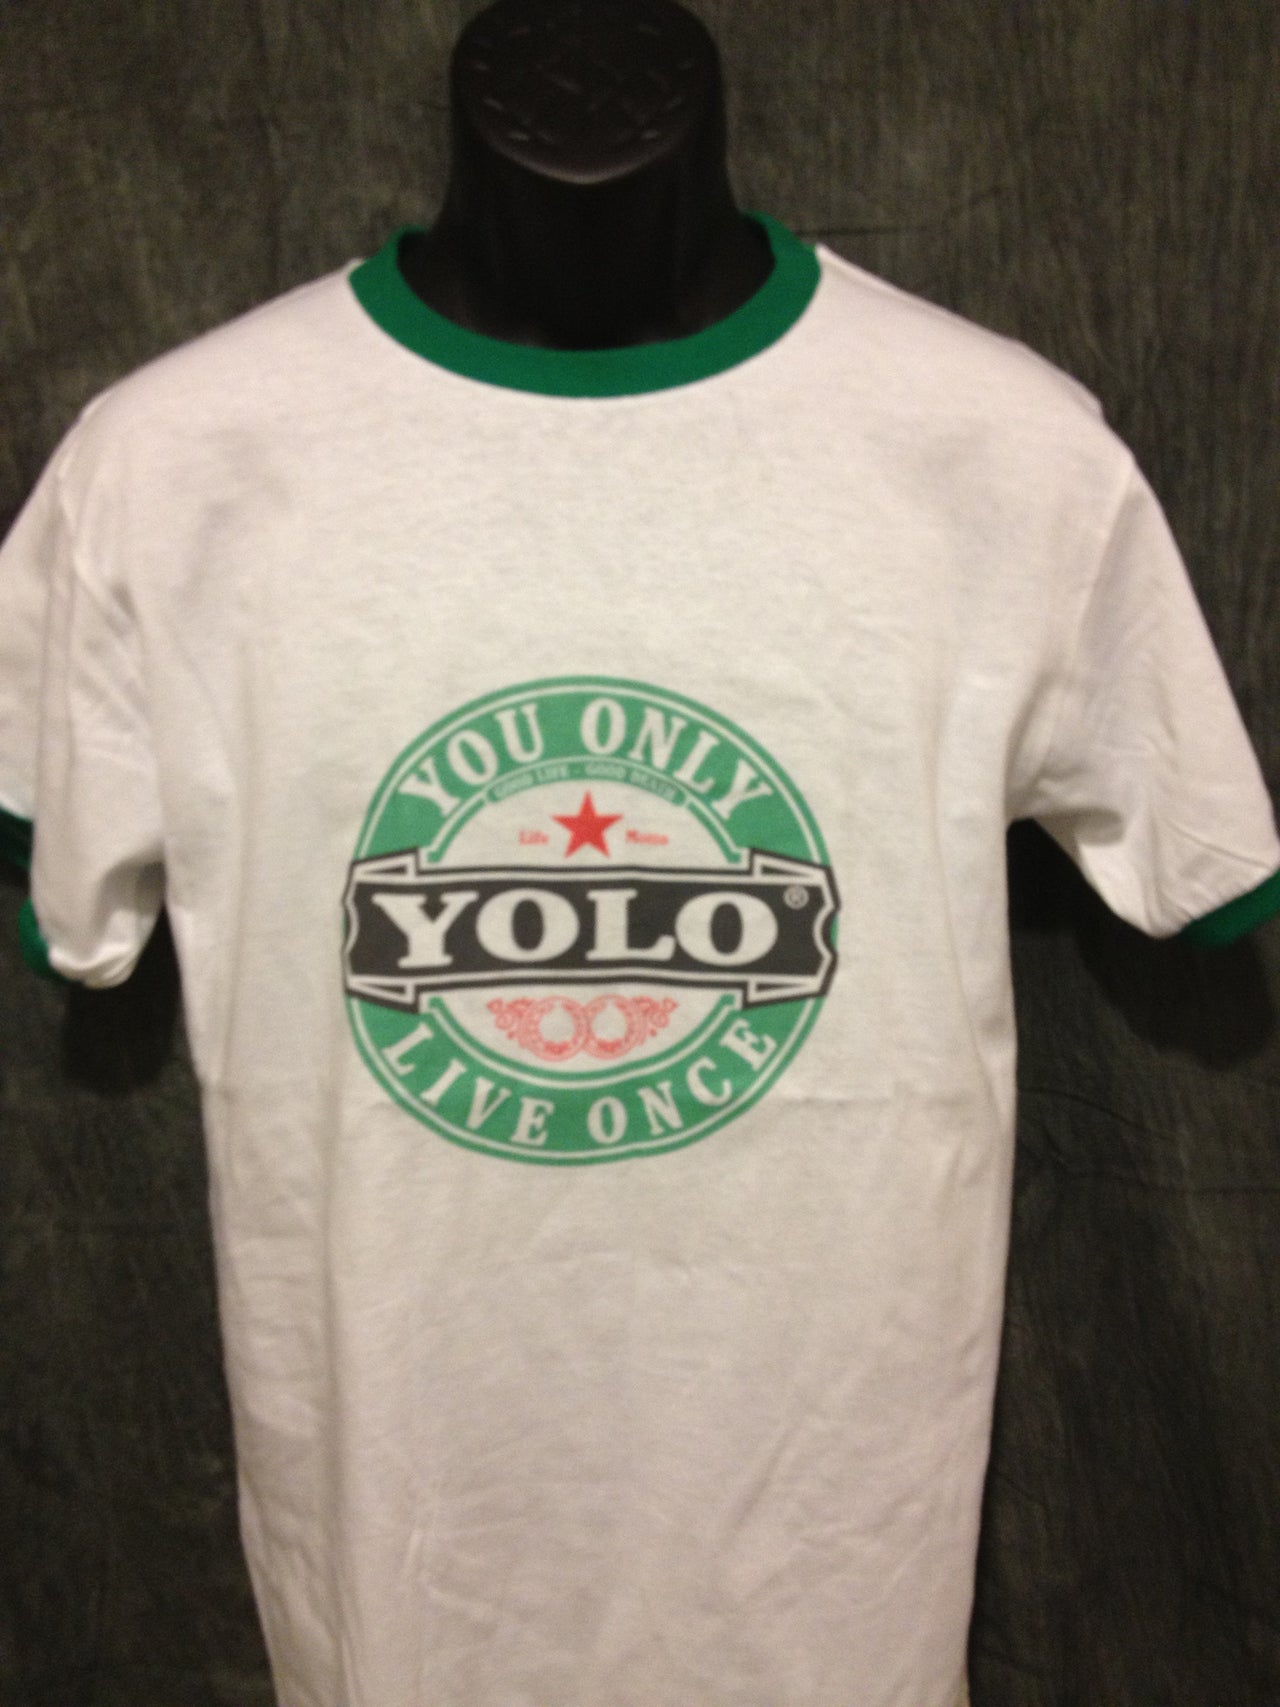 Drake Yolo Ringer Tshirt: Yolo Print on Green Ringer Tshirt - TshirtNow.net - 2